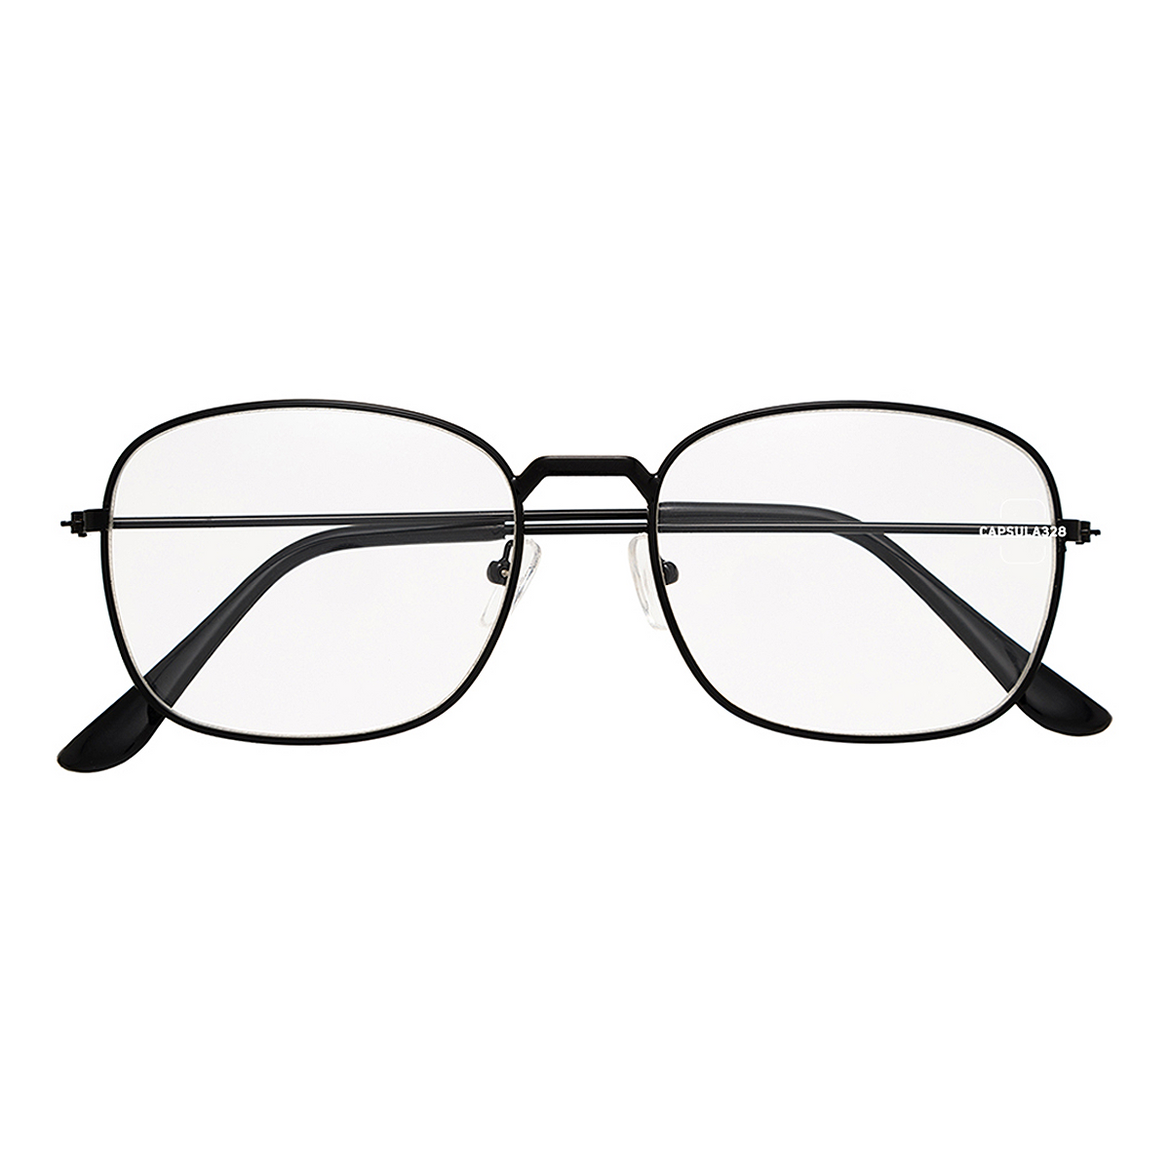 Имиджевые очки Square 1404